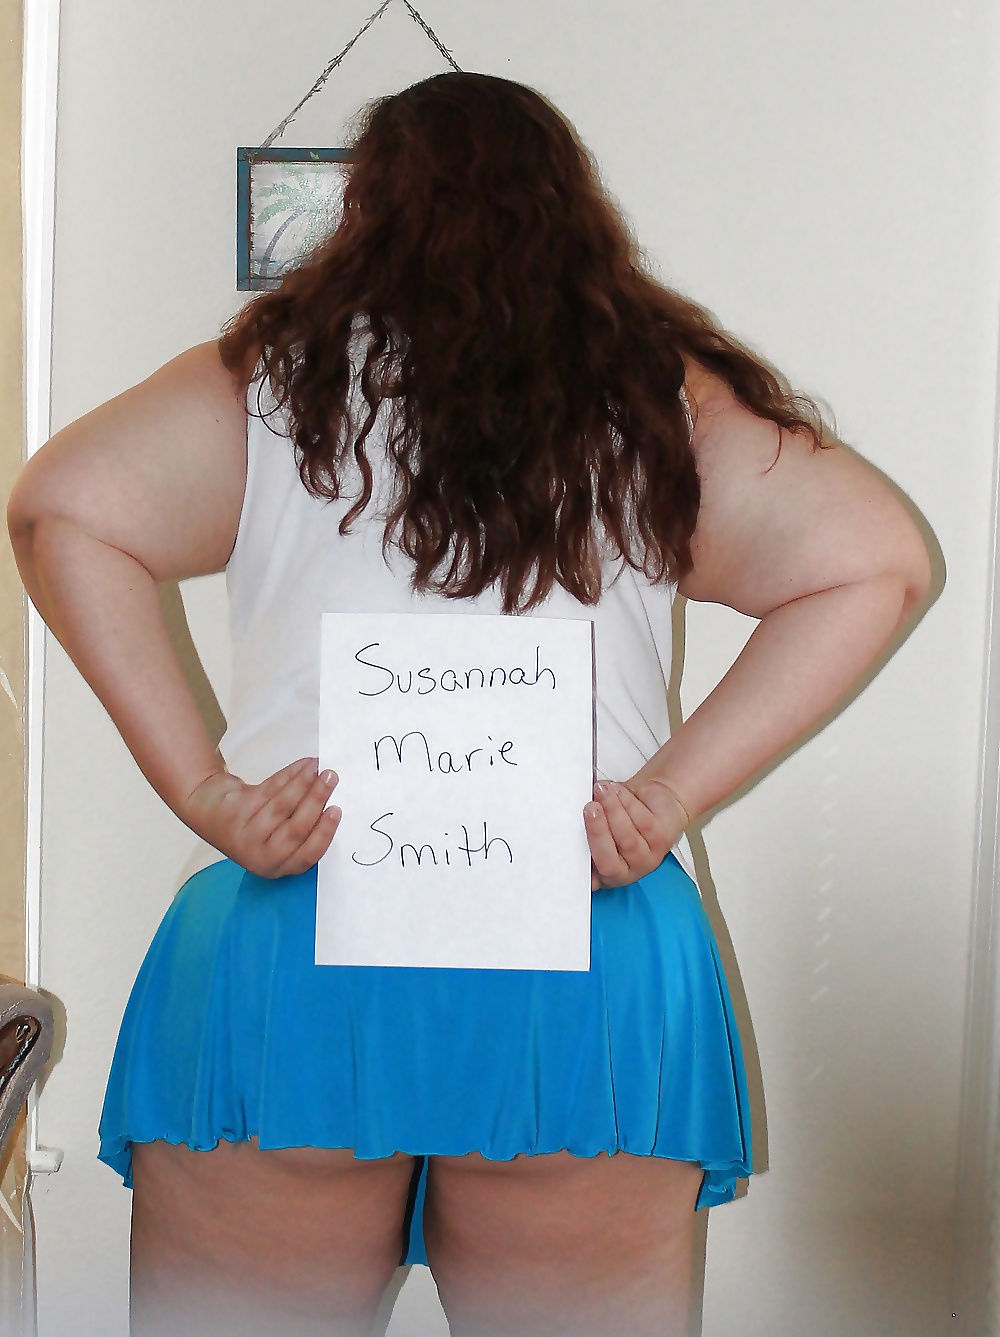 Slut Susannah Smith Exposed #27617253